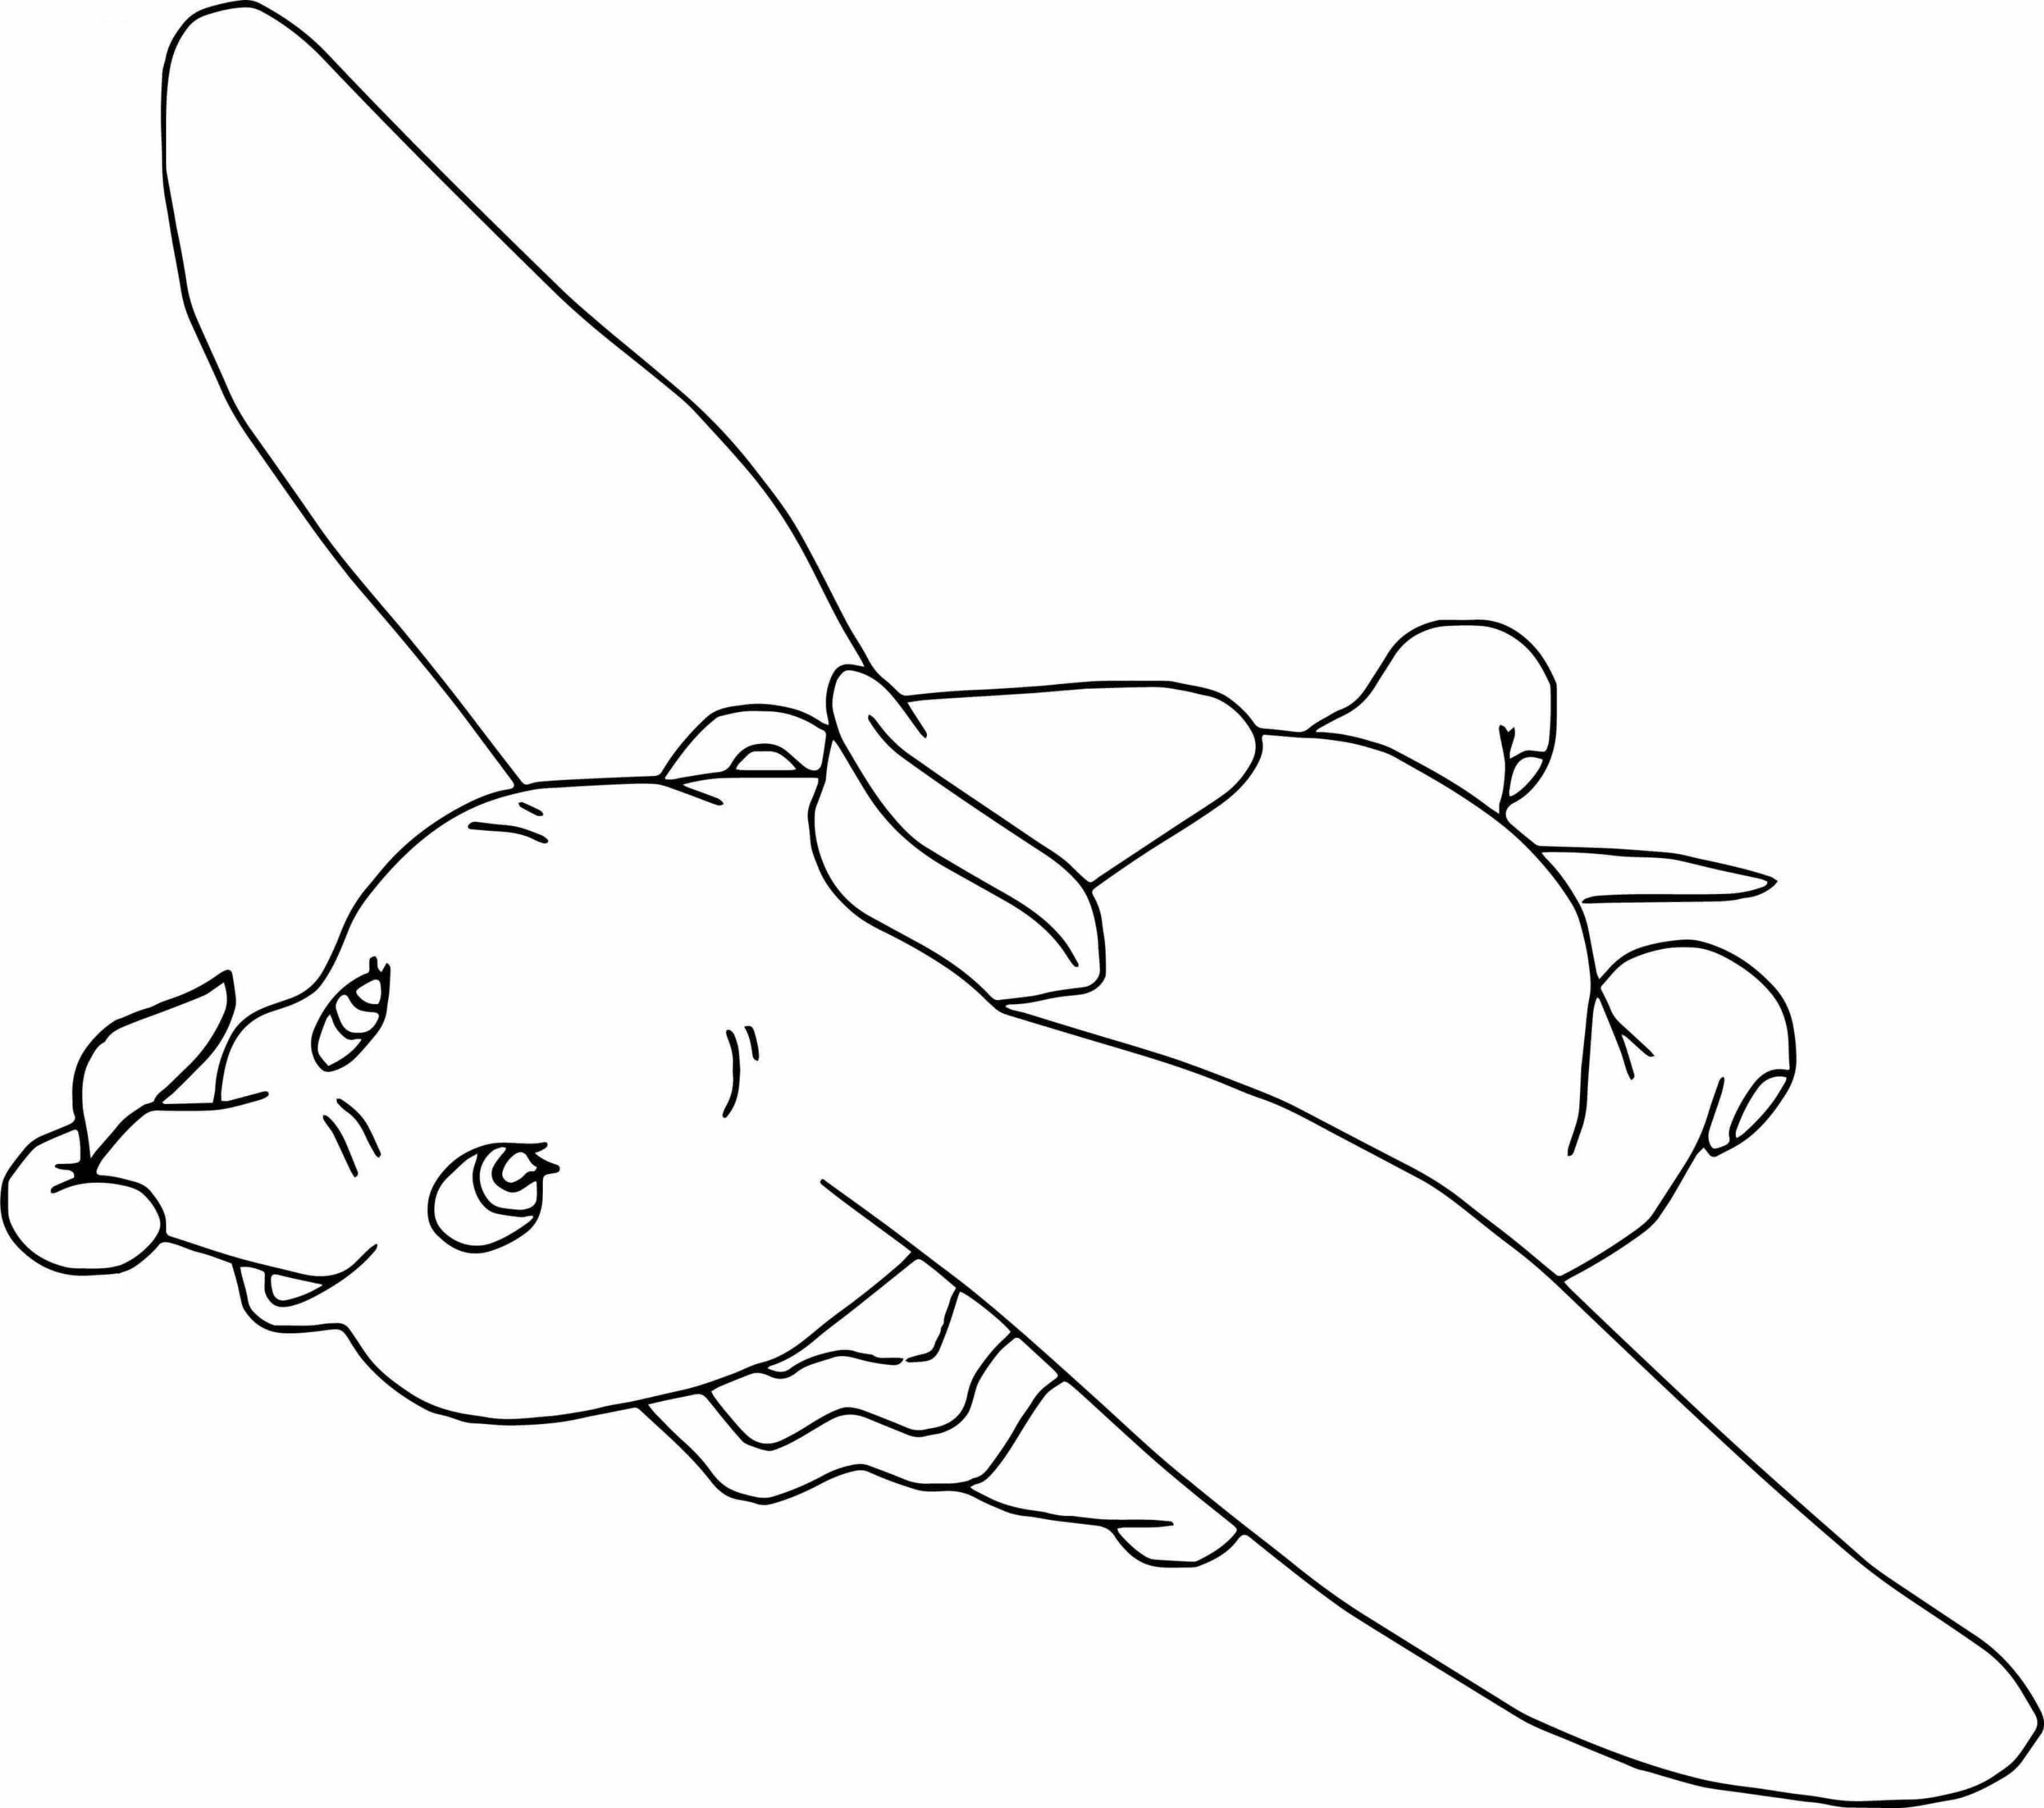 Dibujos de La Superhabilidad Del Bebé Elefante es Volar Con Sus Grandes Orejas para colorear